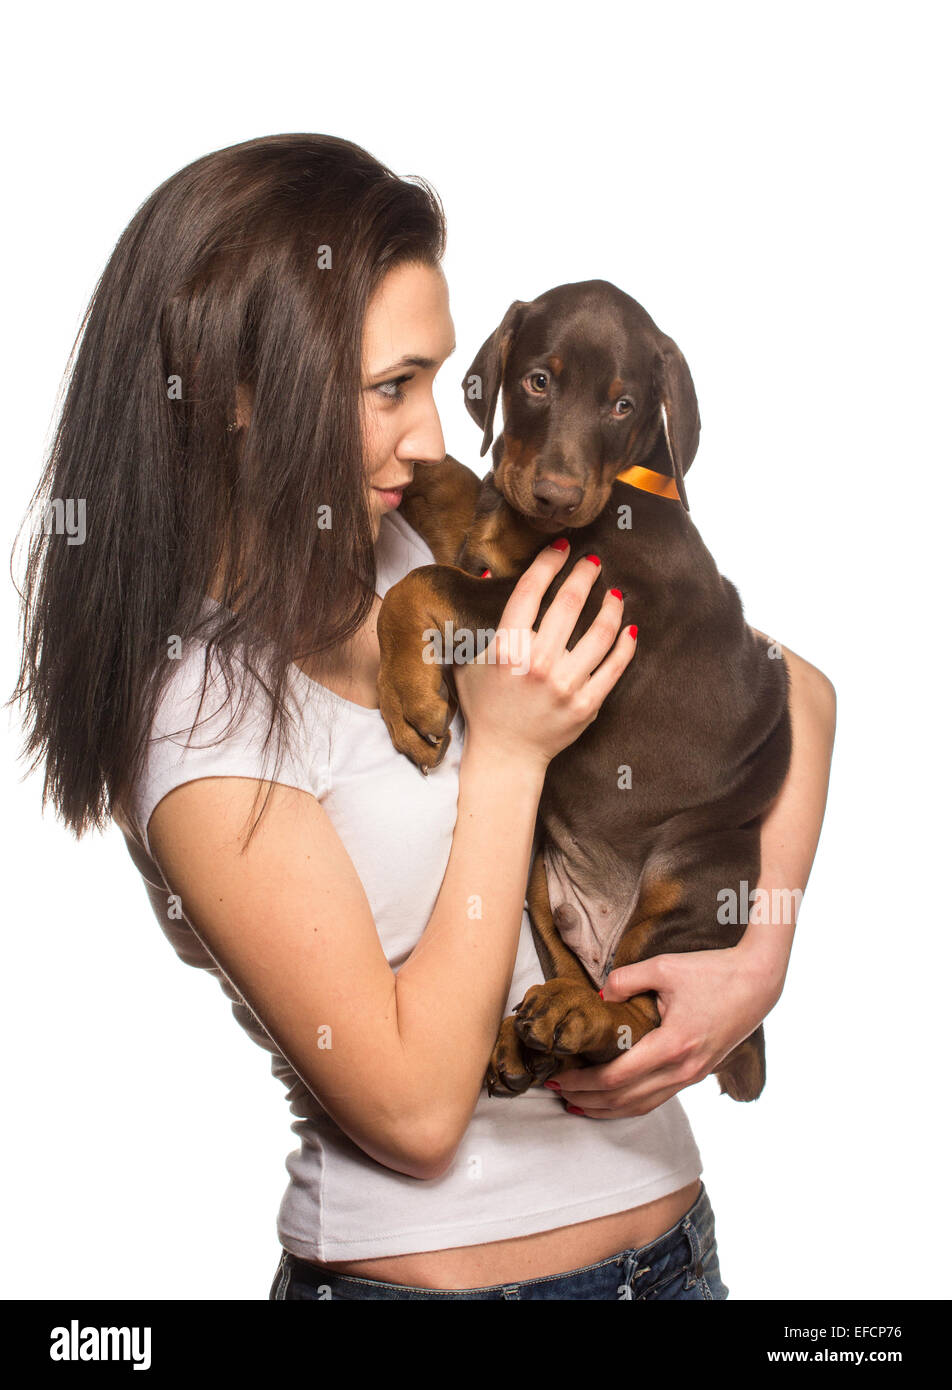 Bruna ragazza baciare il suo cucciolo doberman isolati su sfondo bianco Foto Stock